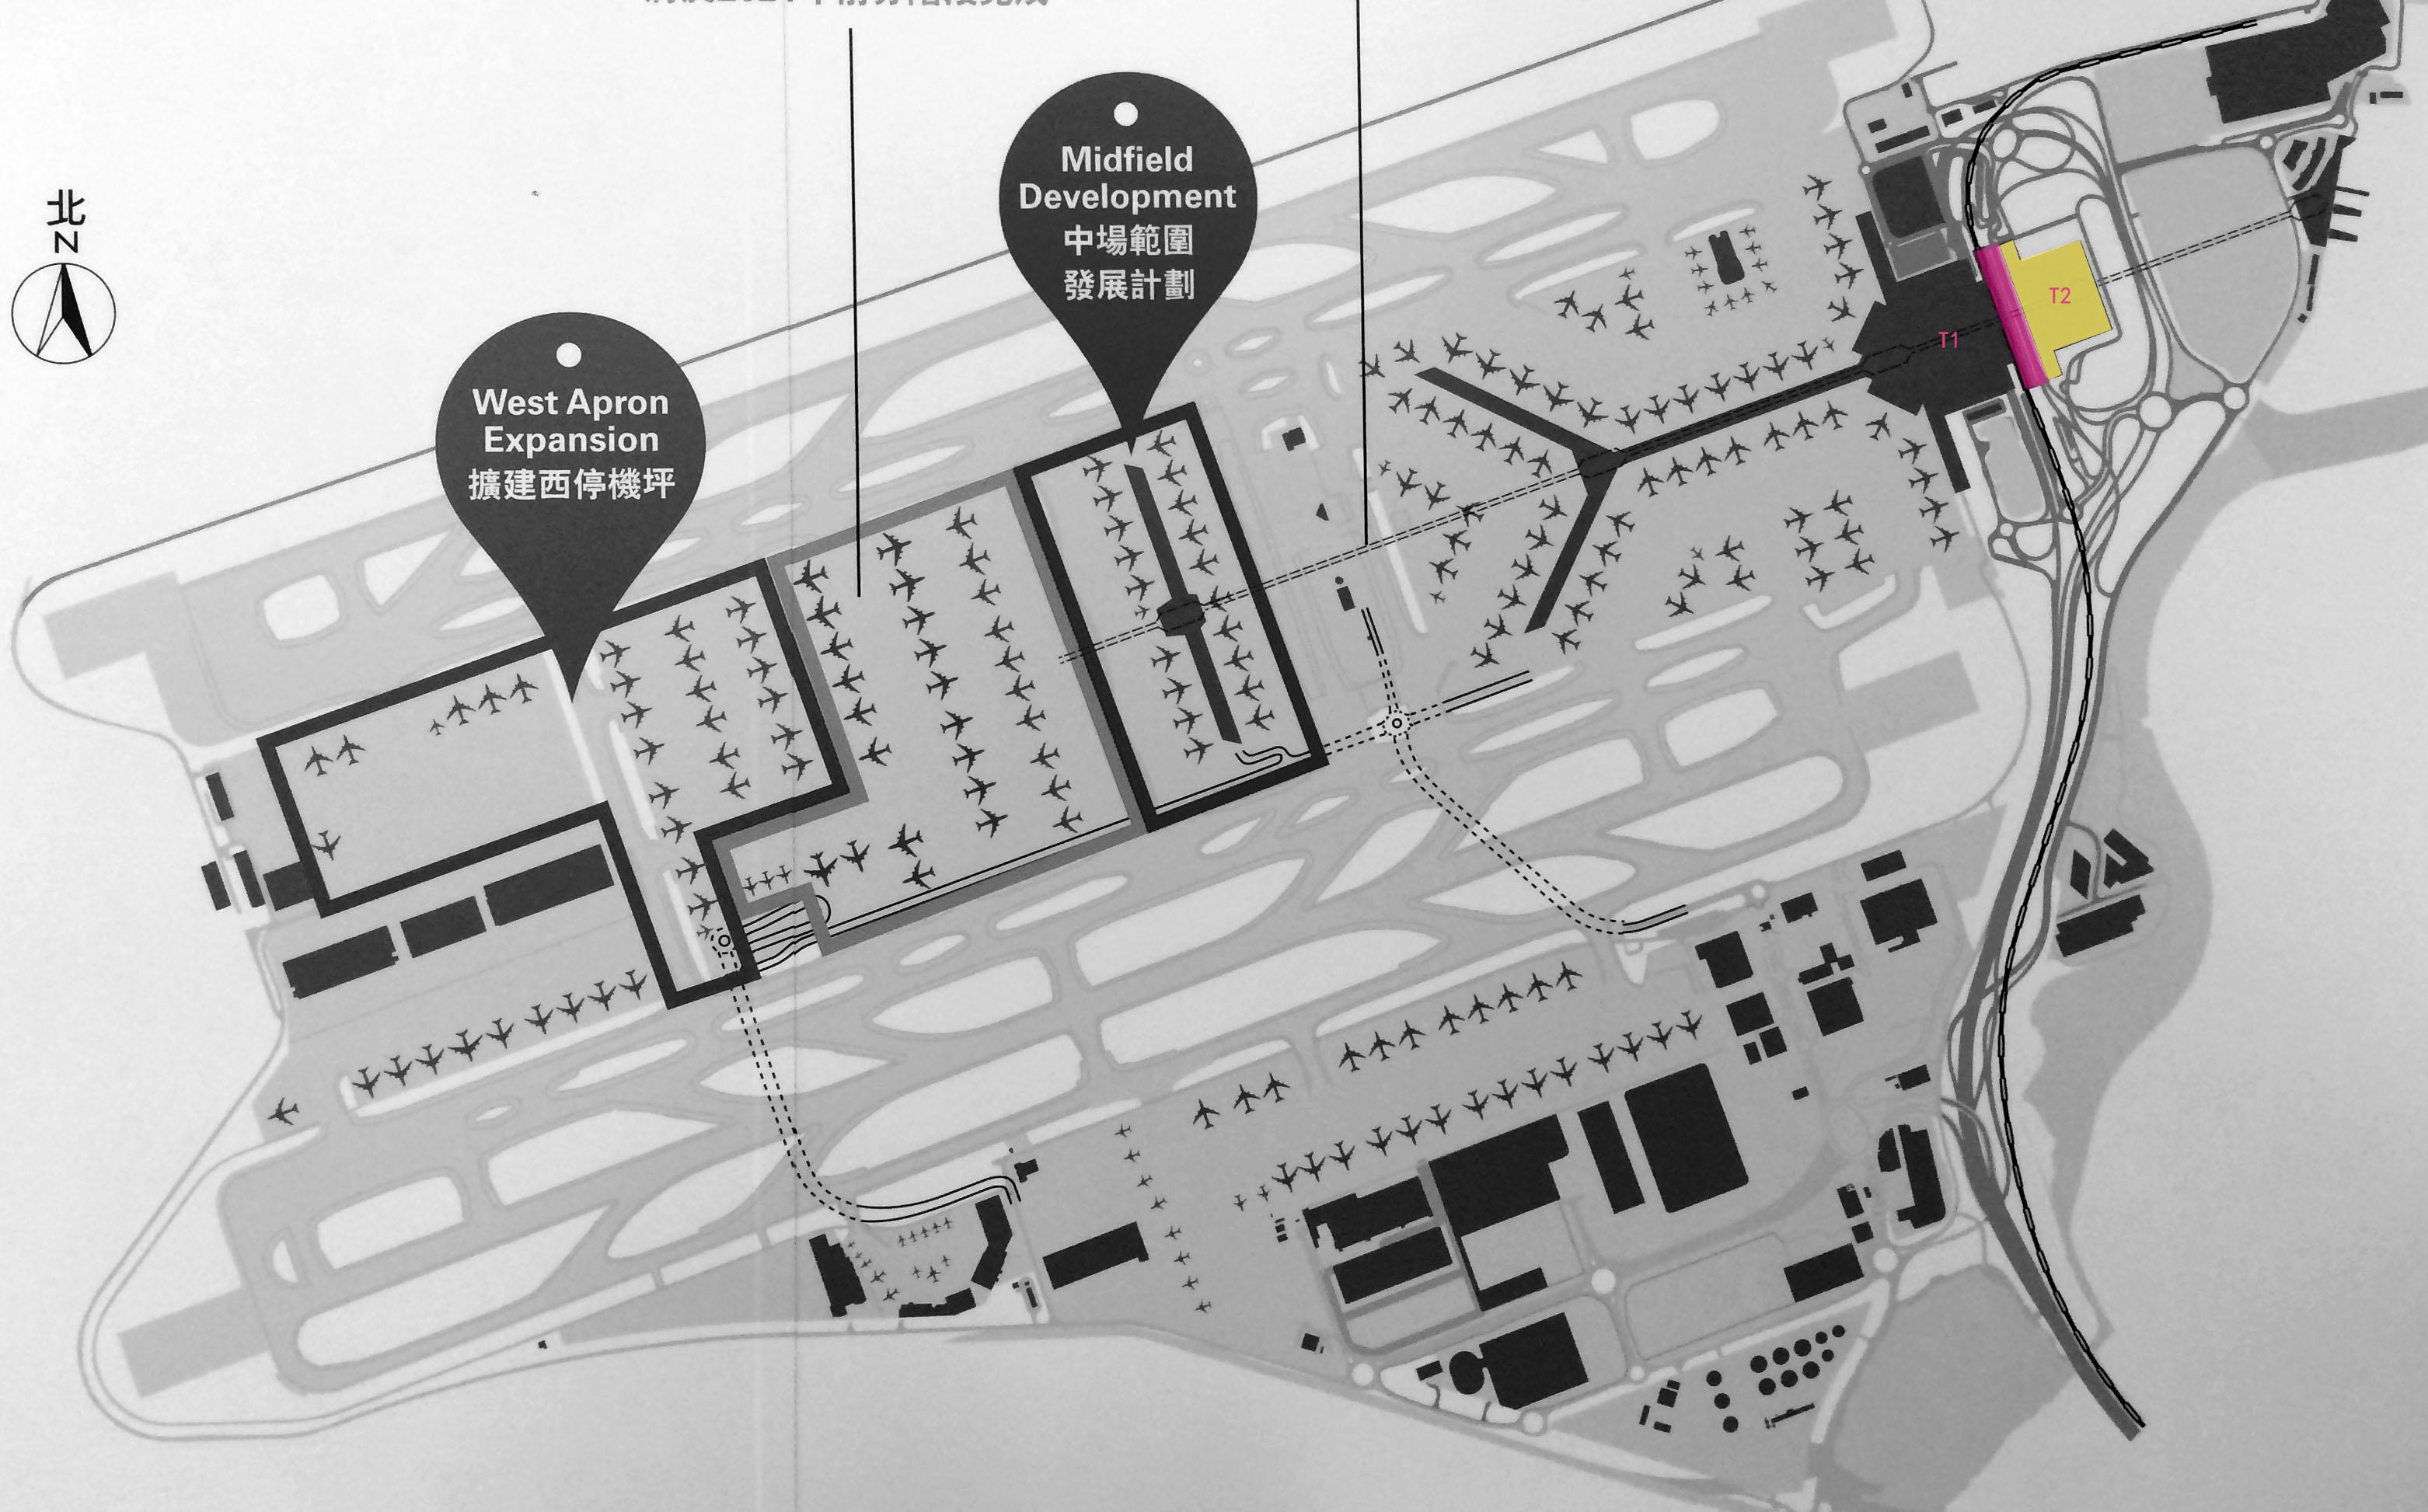 香港机场 t1 和 t2 航站楼的功能各是什么,为什么要修 t2 ?